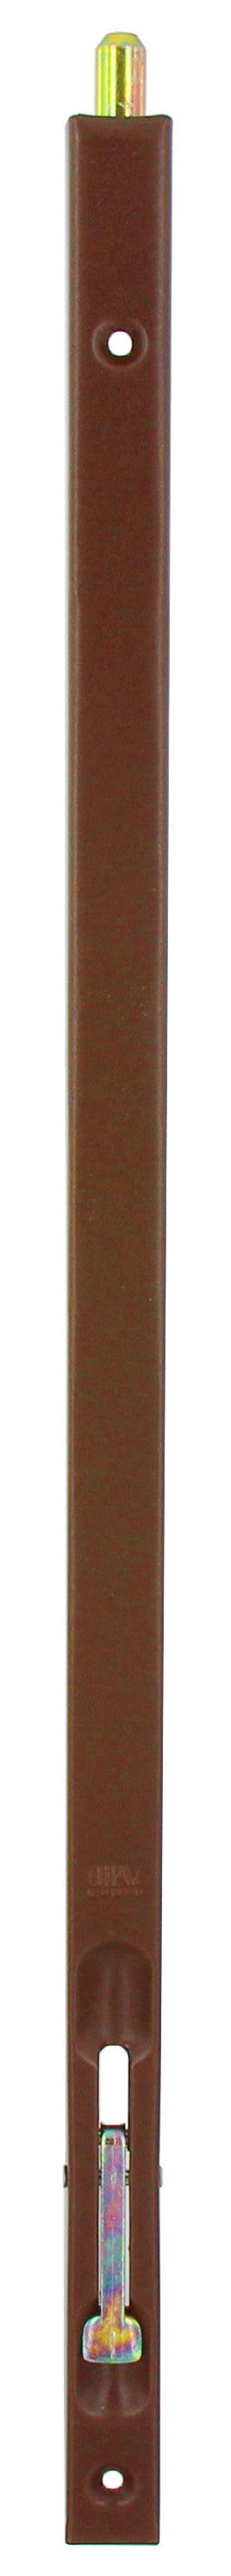 Bl catenaccio incasso bronzato 300 mm